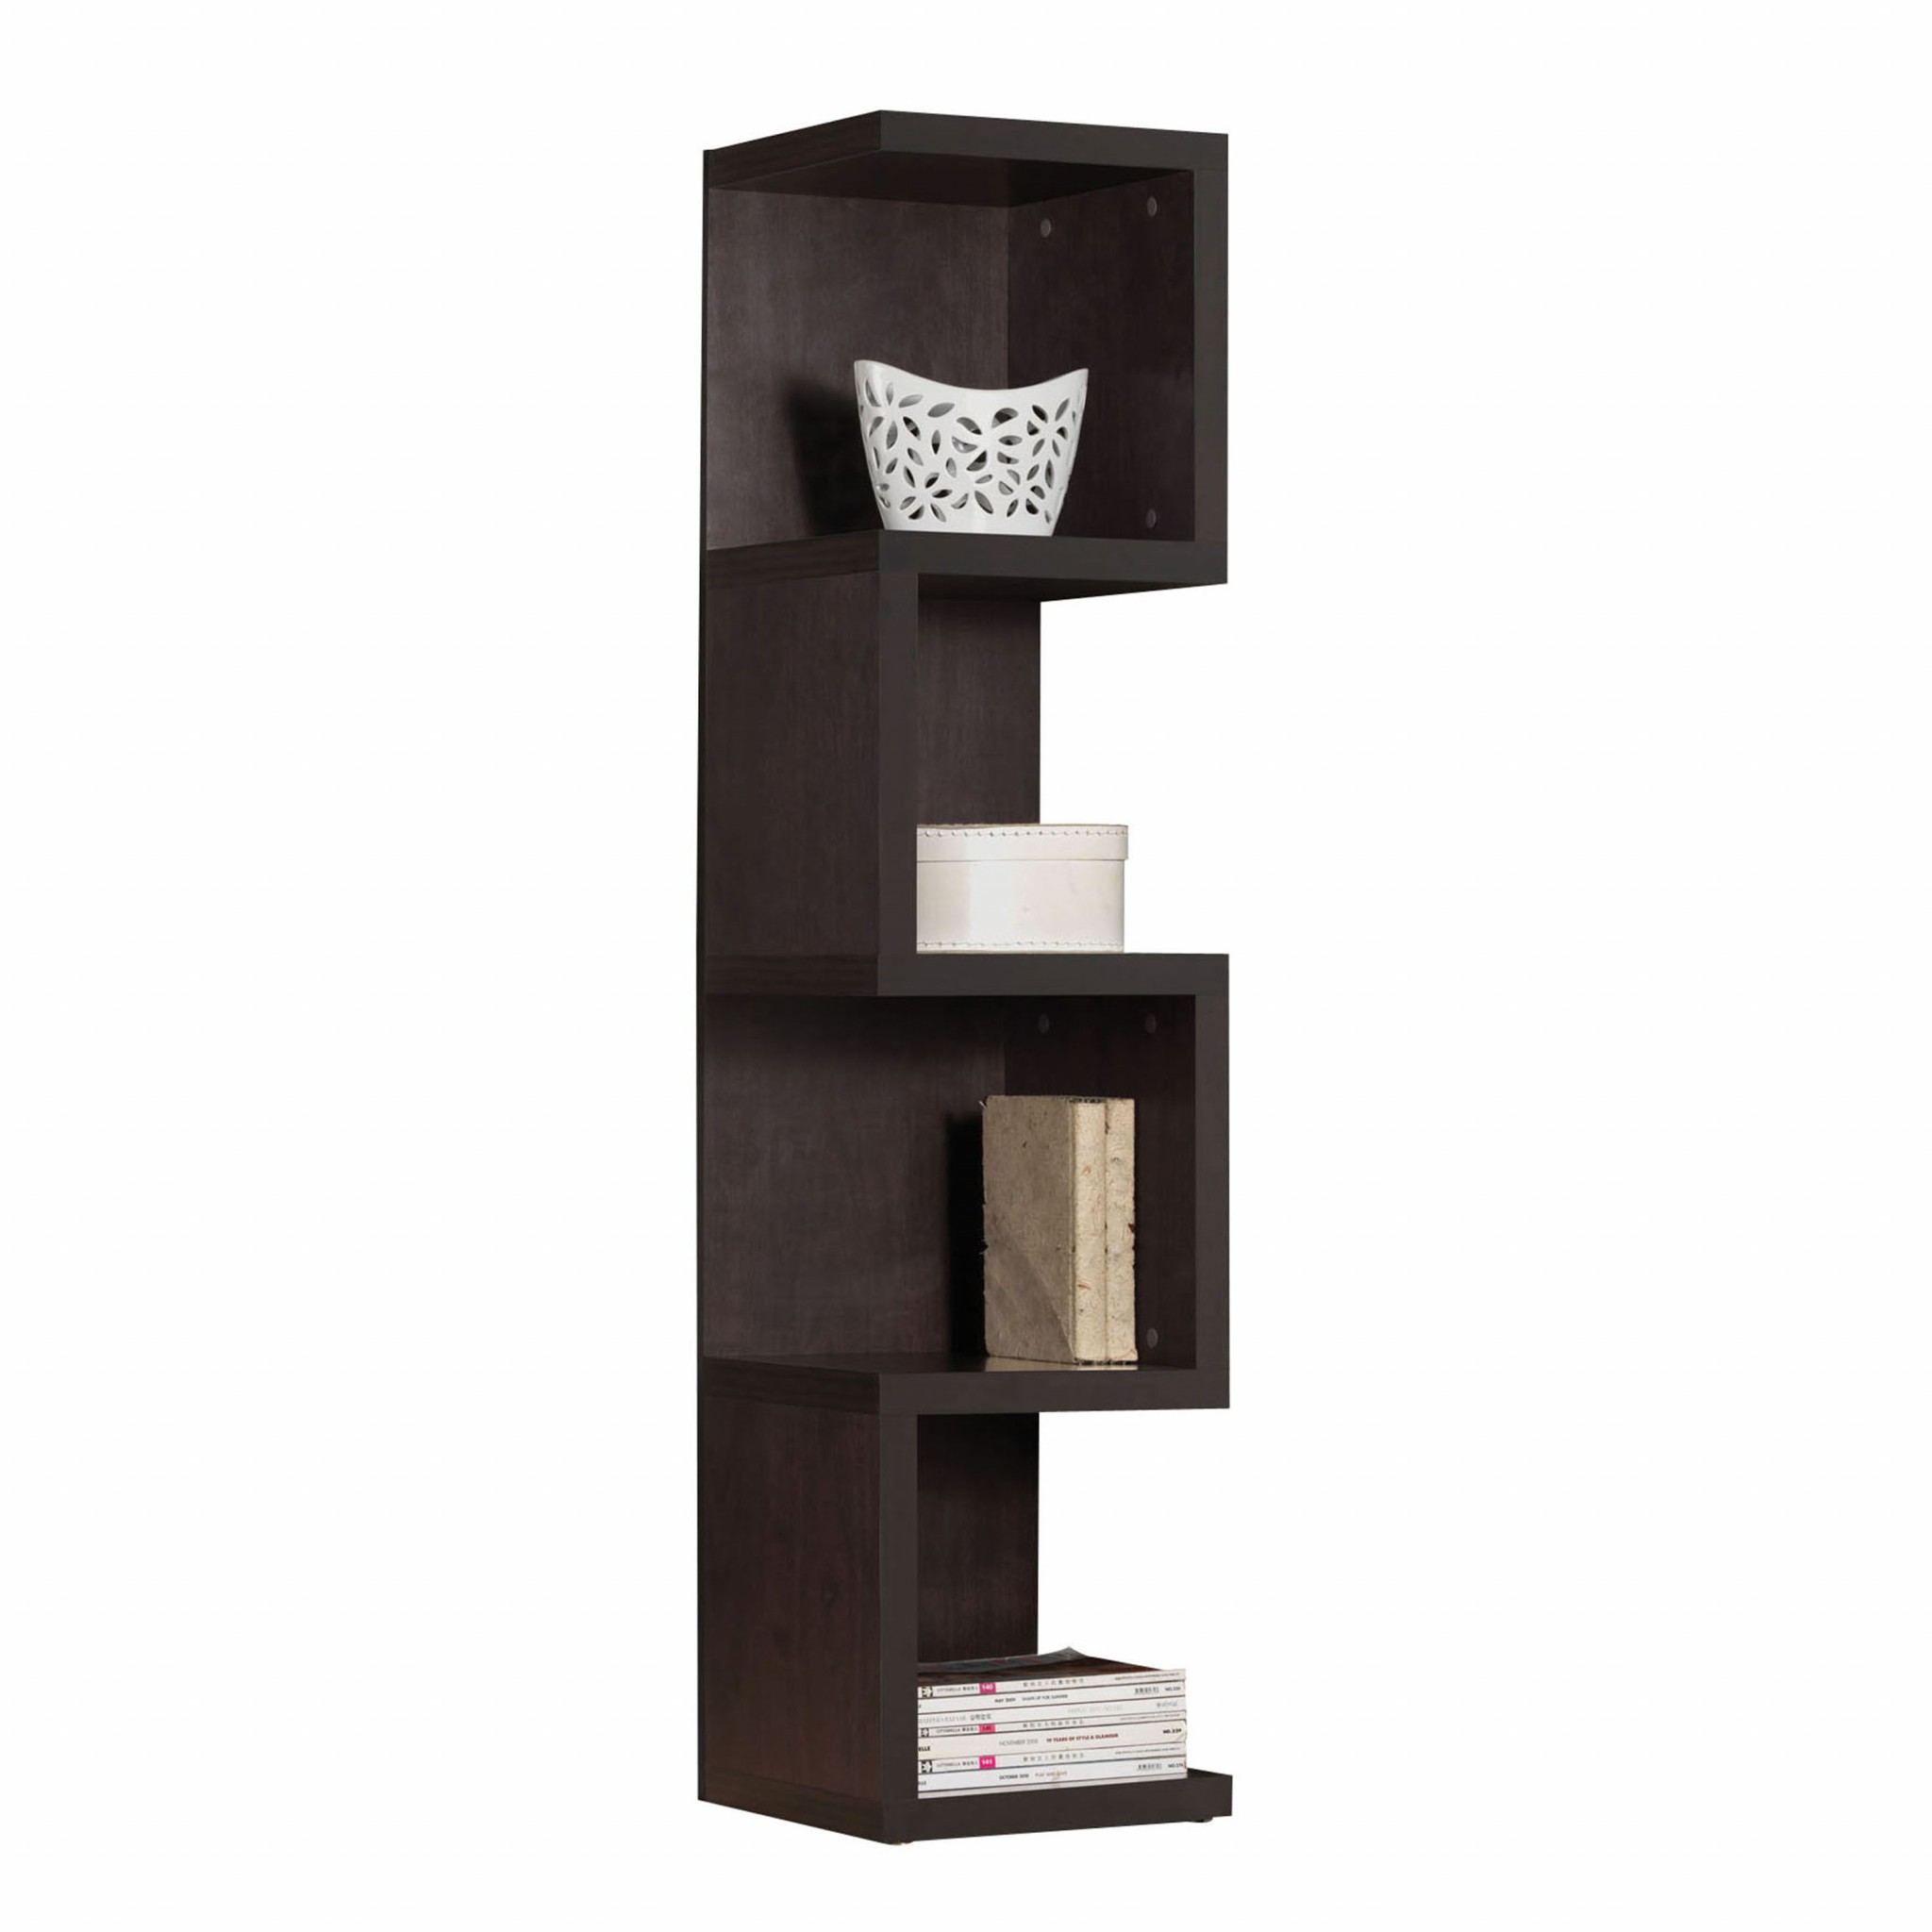 14" X 14" X 59" Espresso Wood Veneer (PU Paper) Bookcase - Large S Shelf